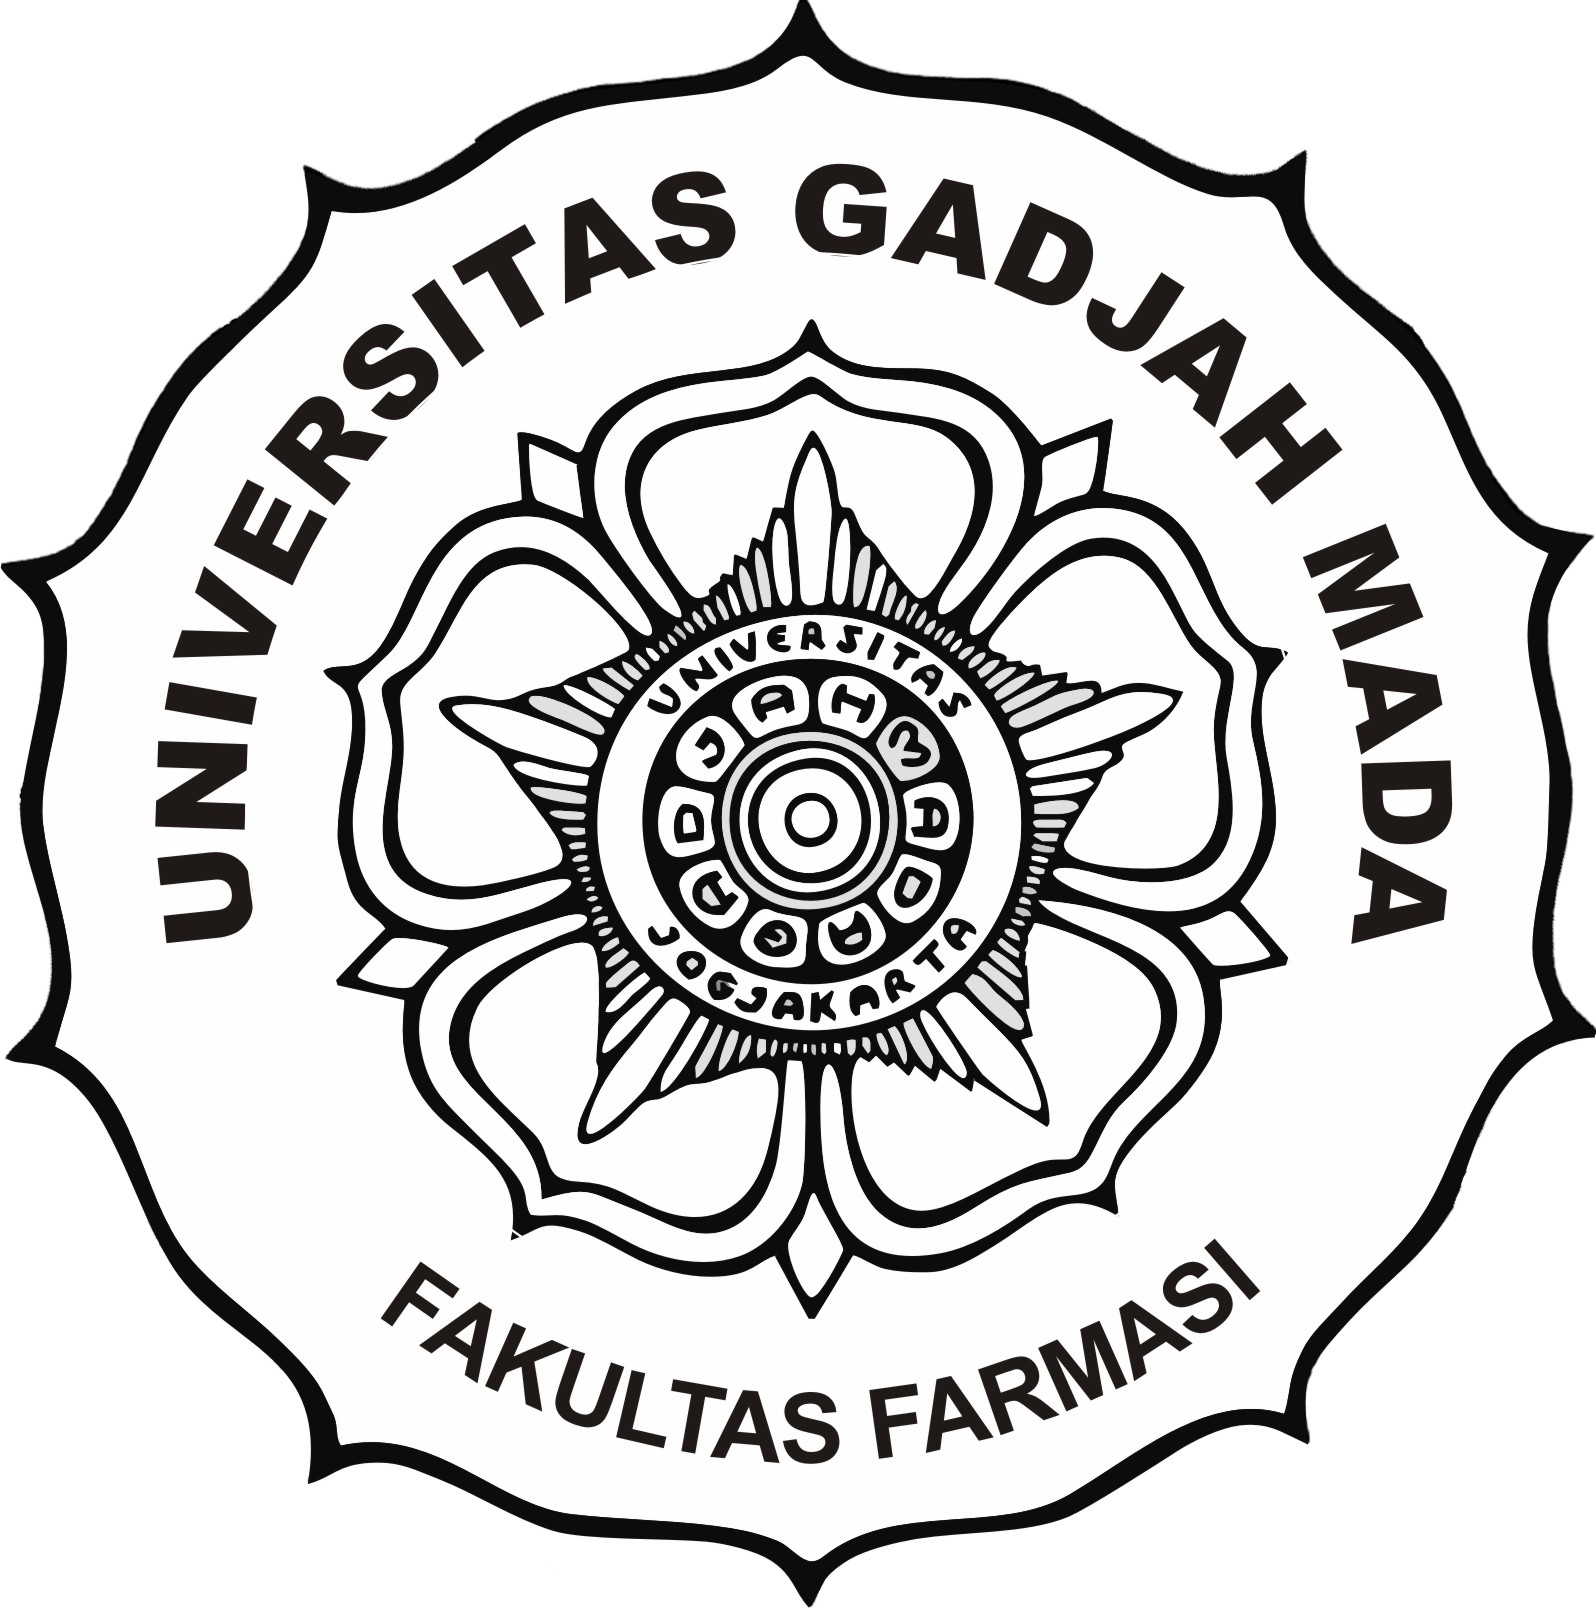 Fakultas Farmasi Universitas Gadjah Mada didirikan oleh Kementrian Kesehatan RI pada tanggal 27 September 1946 dengan nama Perguruan Tinggi Ahli Obat PTAO